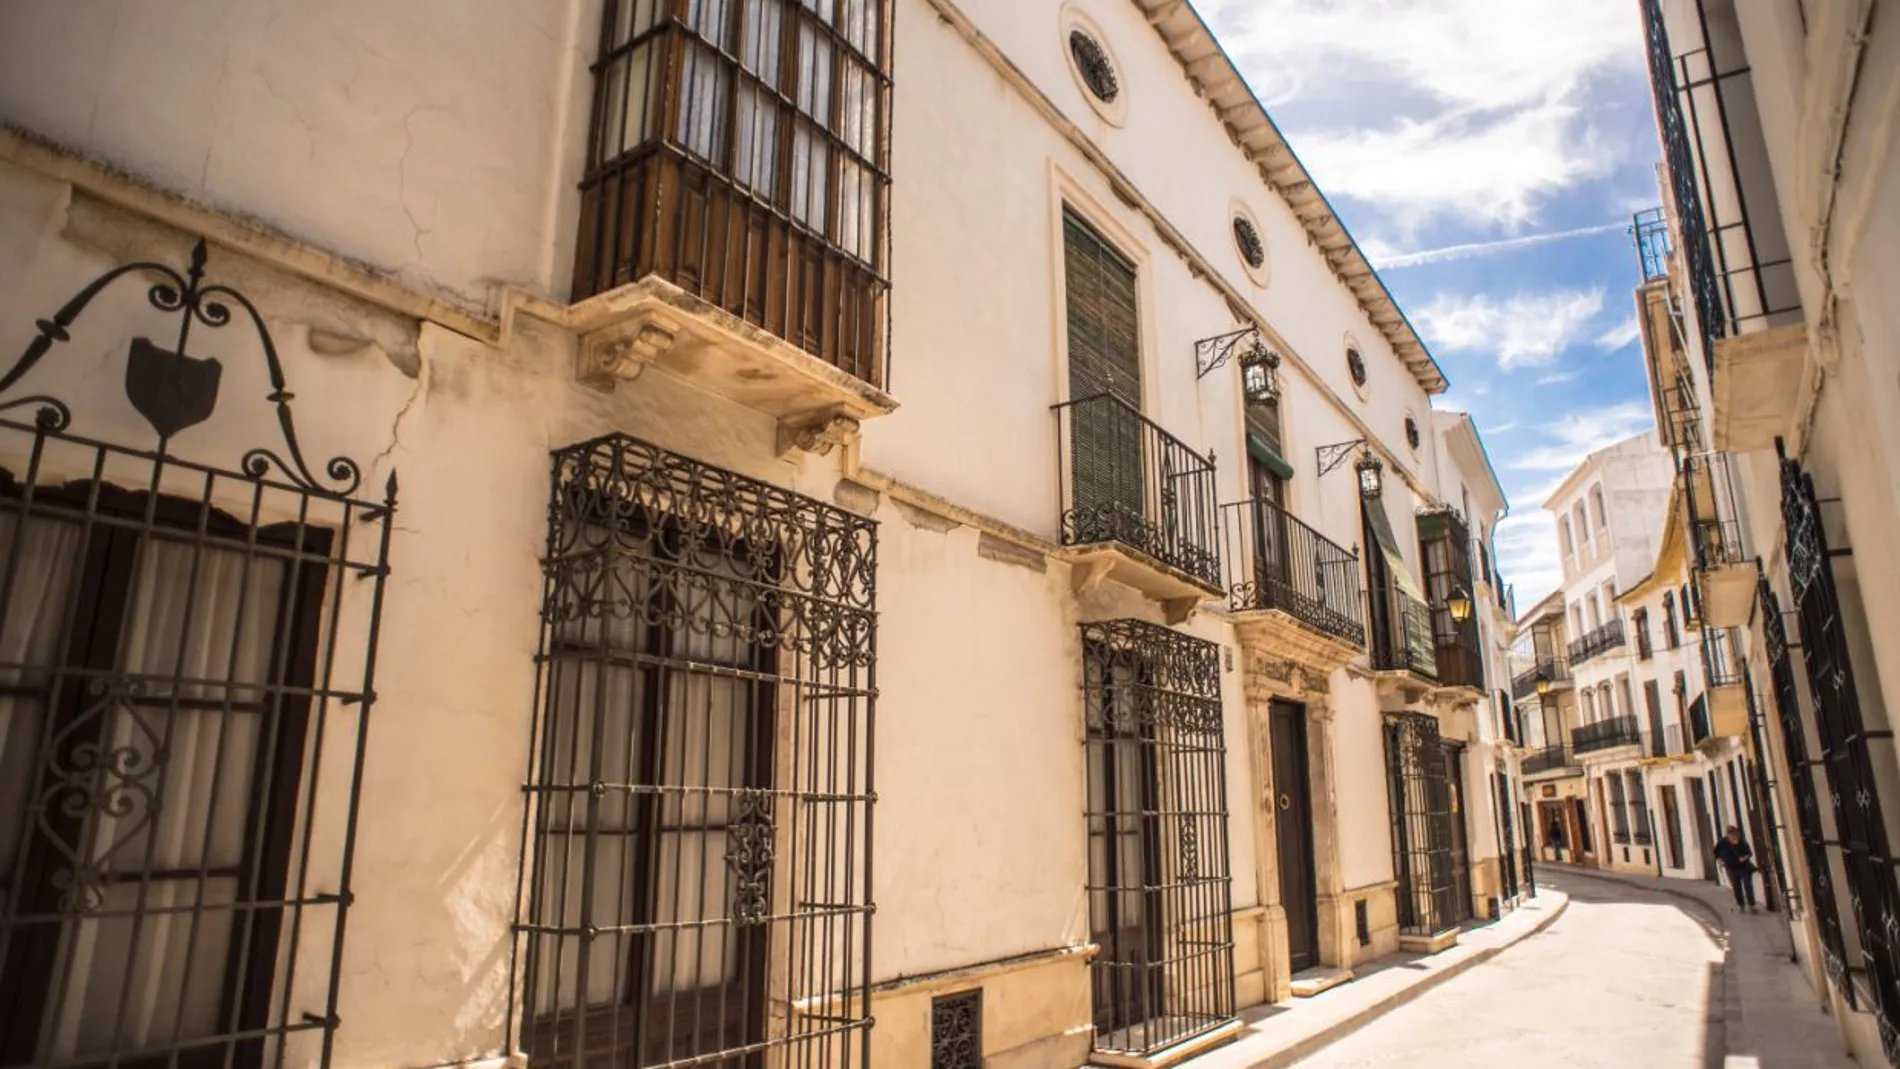 Este es uno de los pueblos más bonitos de España conocido como la "Ciudad del Agua".